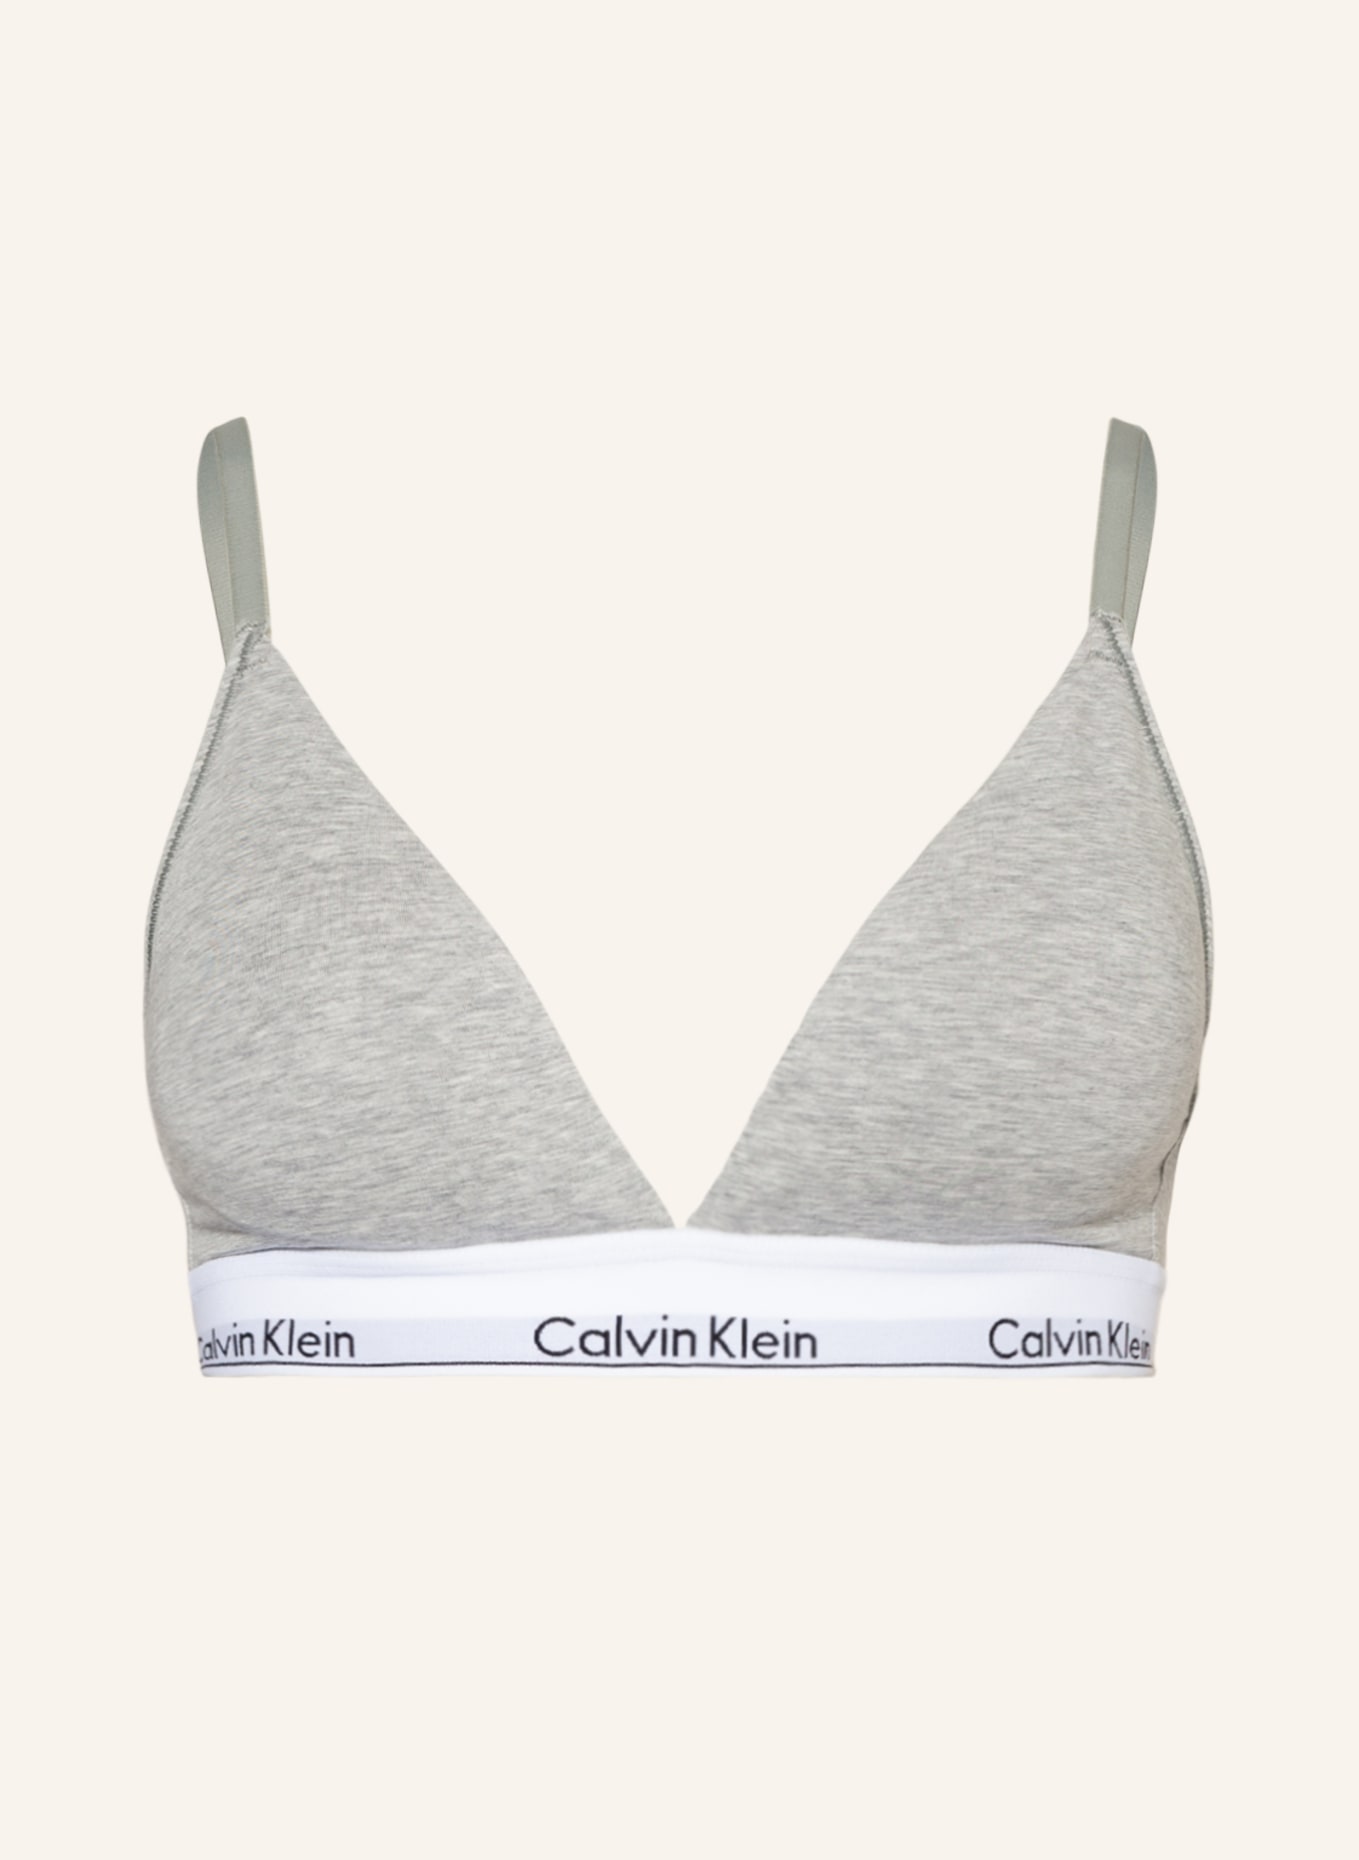 Calvin Klein Triangel-BH MODERN COTTON in hellgrau